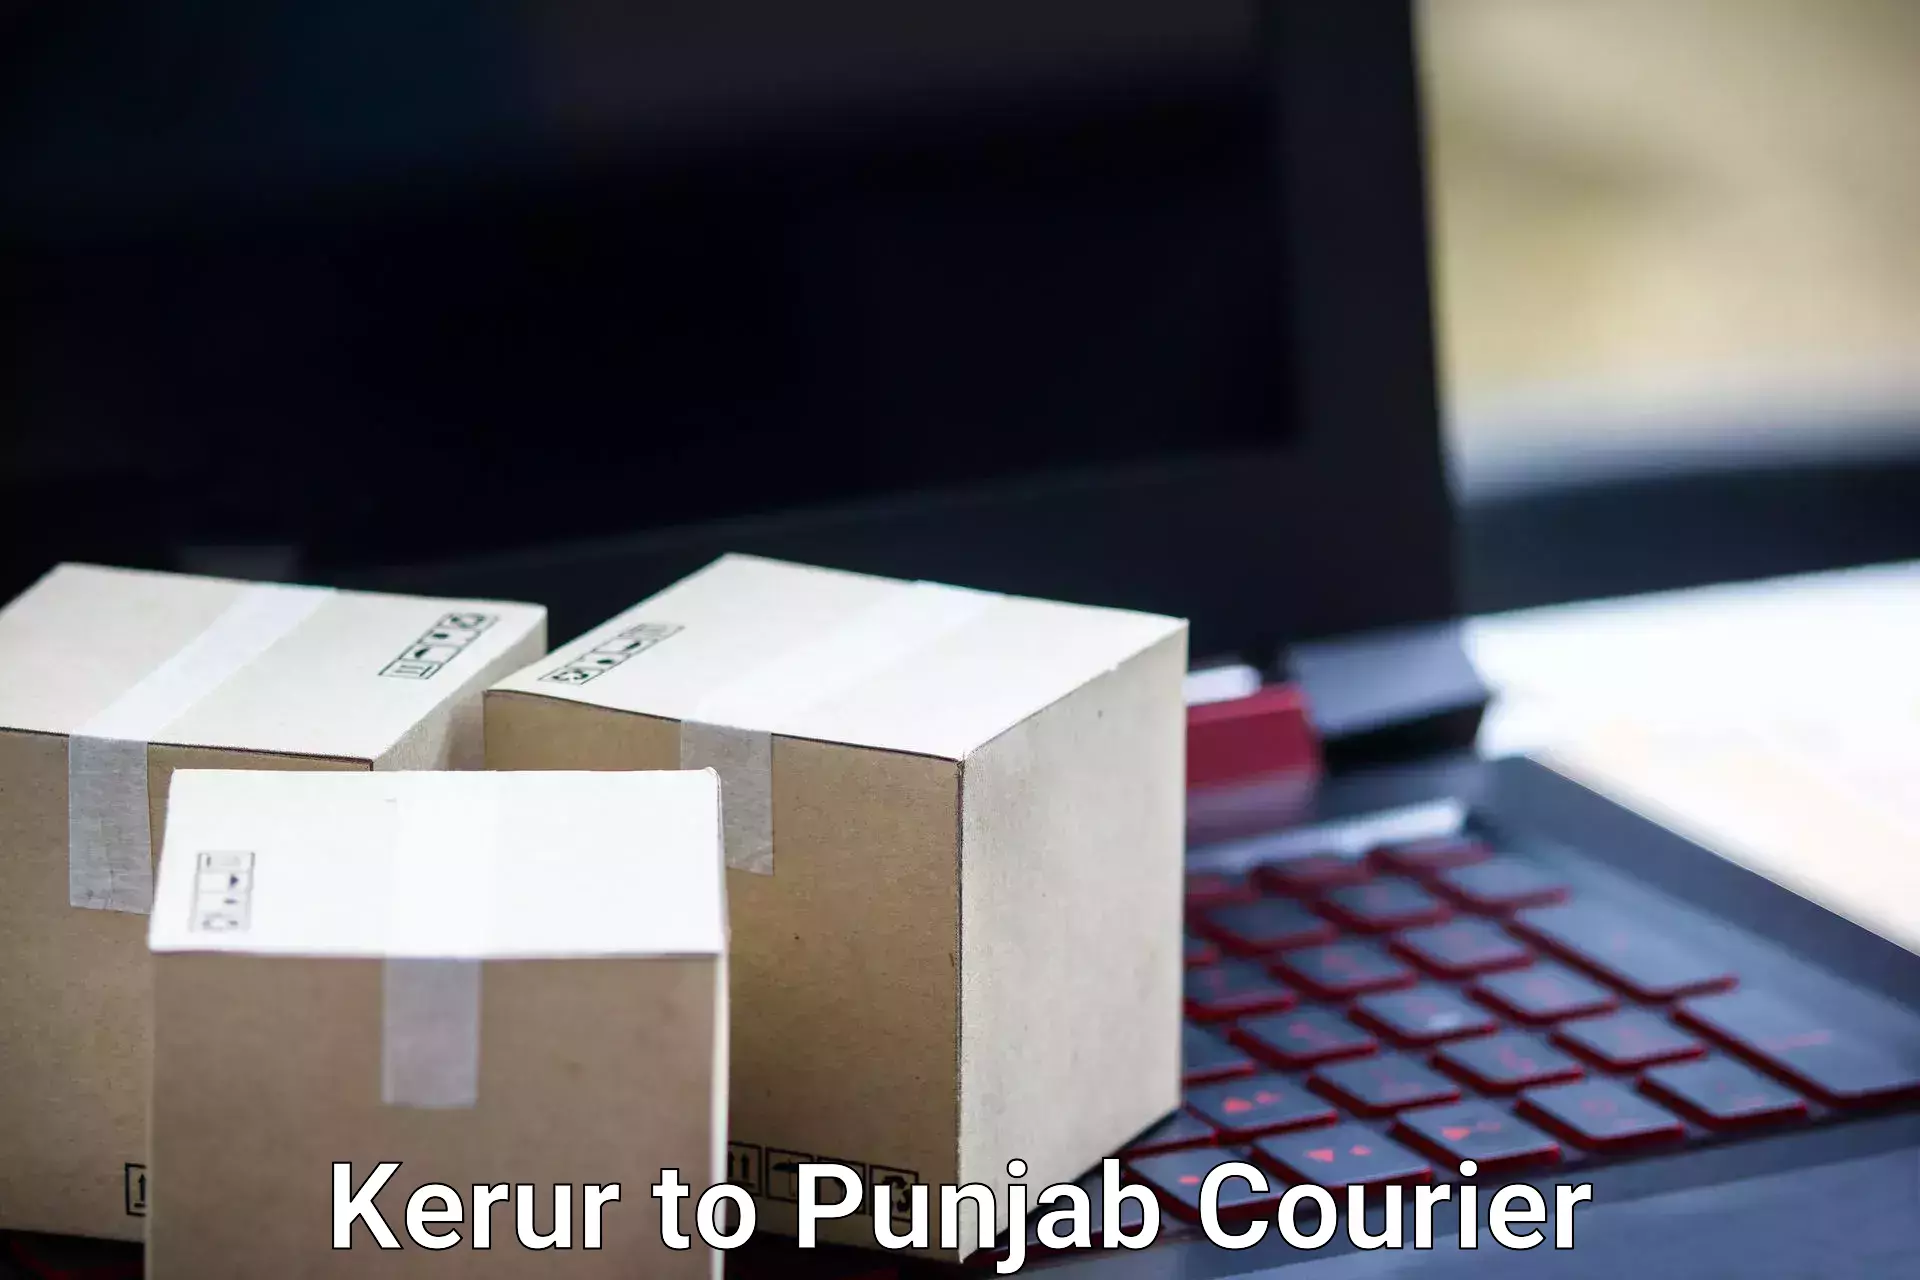 Baggage transport scheduler Kerur to Punjab